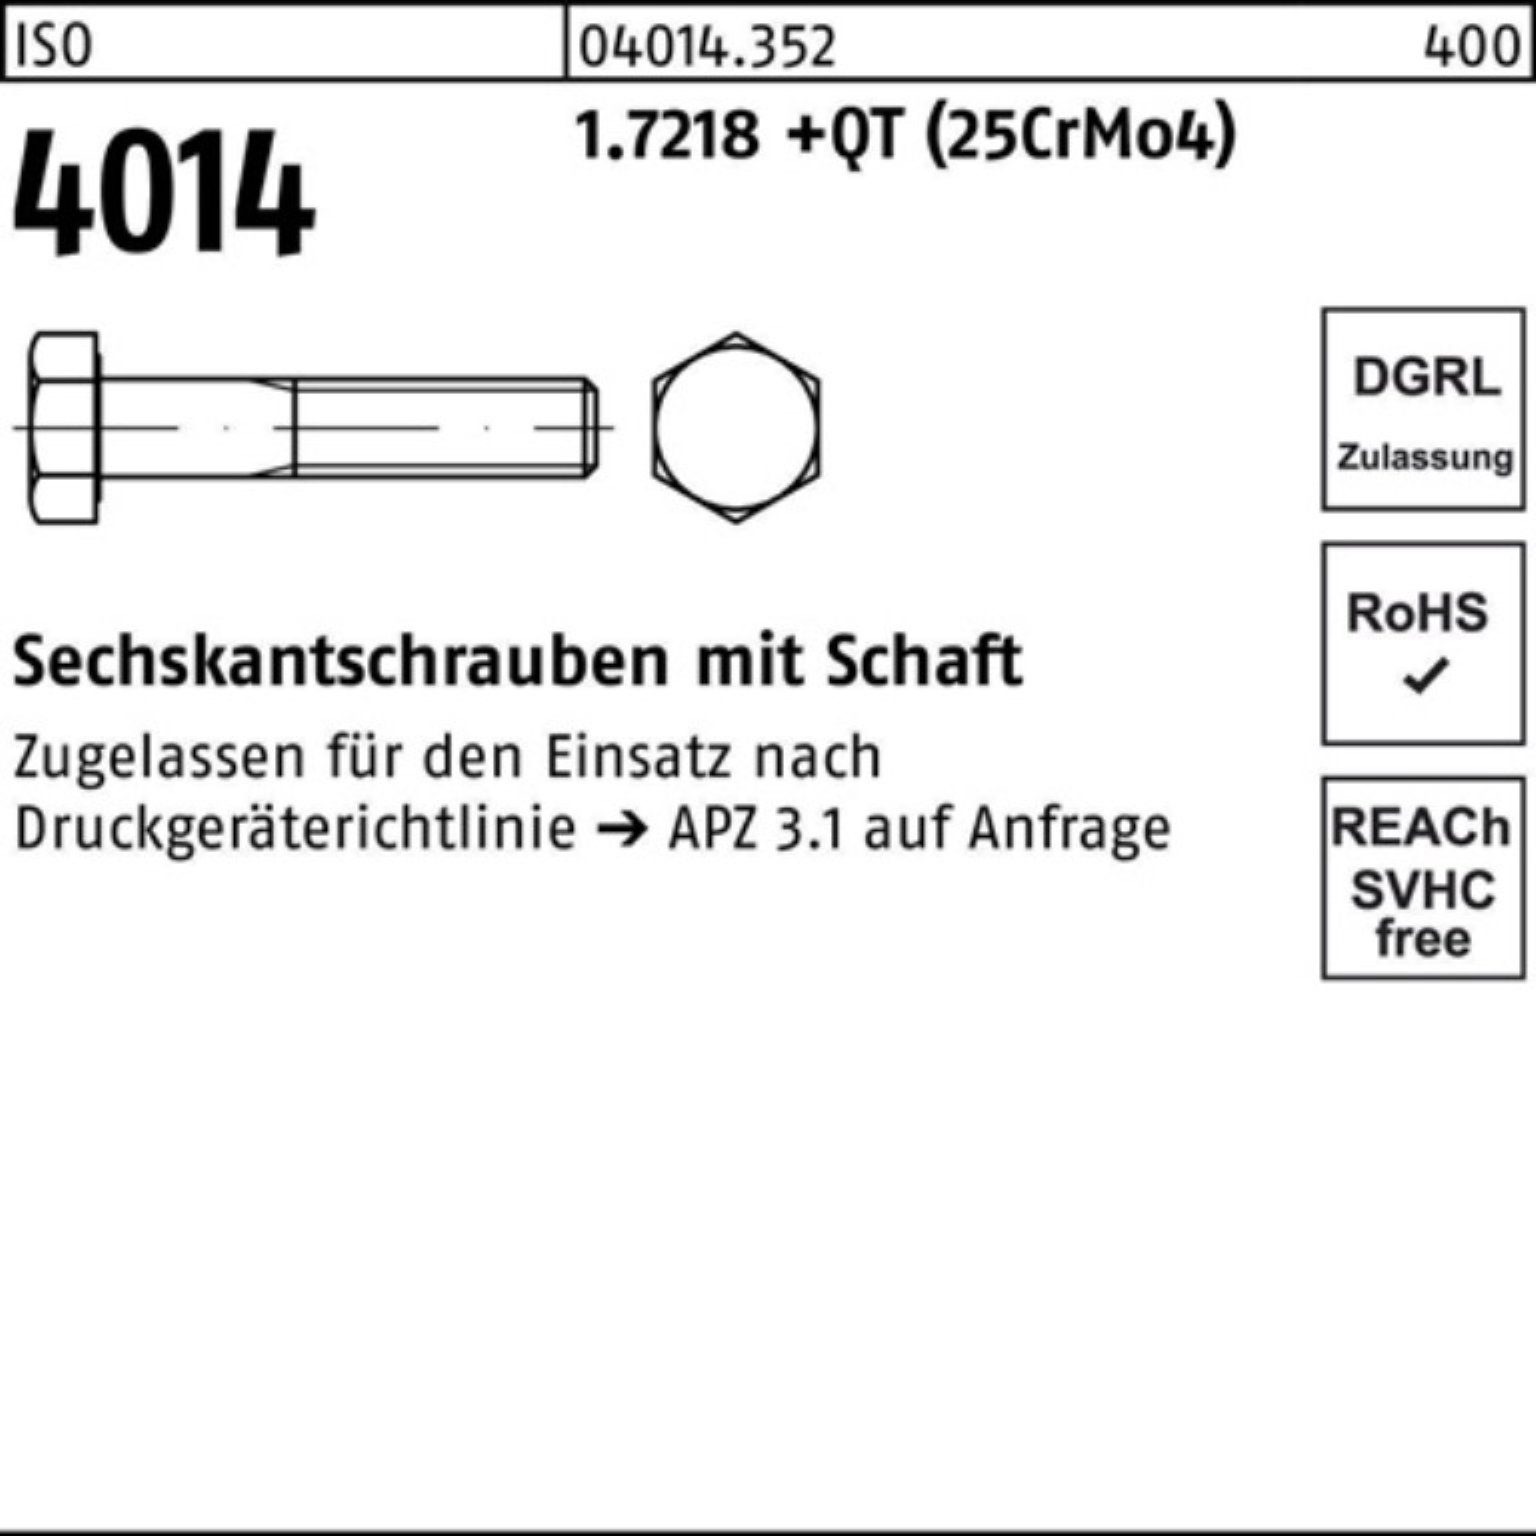 Bufab Sechskantschraube 100er Pack +QT (25Cr ISO 1.7218 M24x Schaft 4014 Sechskantschraube 220